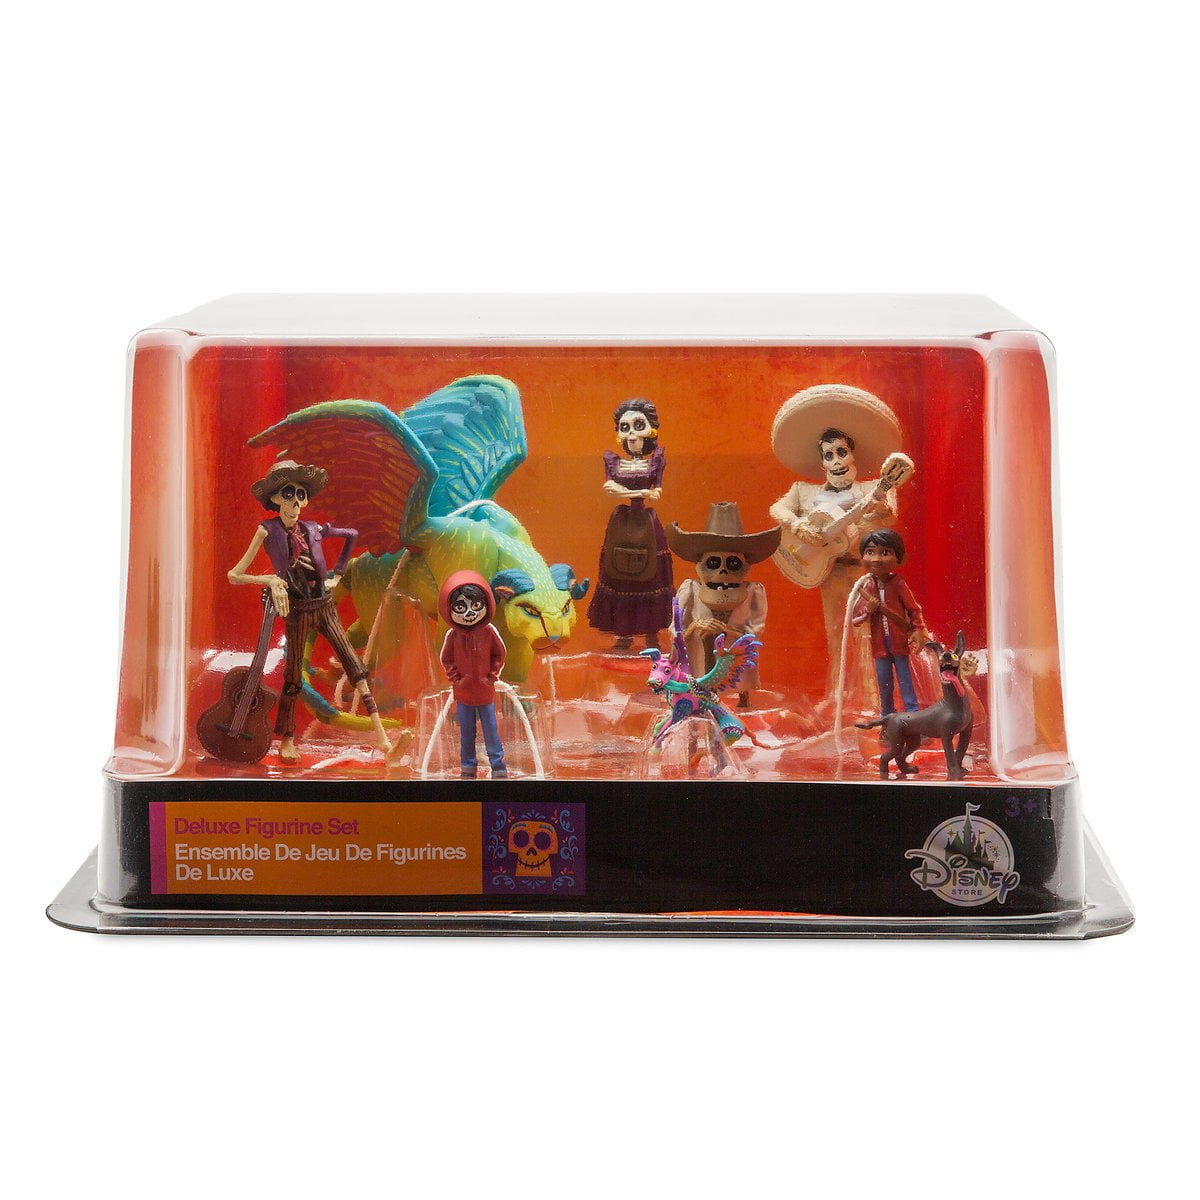 Disney Pixar Coco Deluxe Figurine Set of 8 Figures BRAND for sale online 